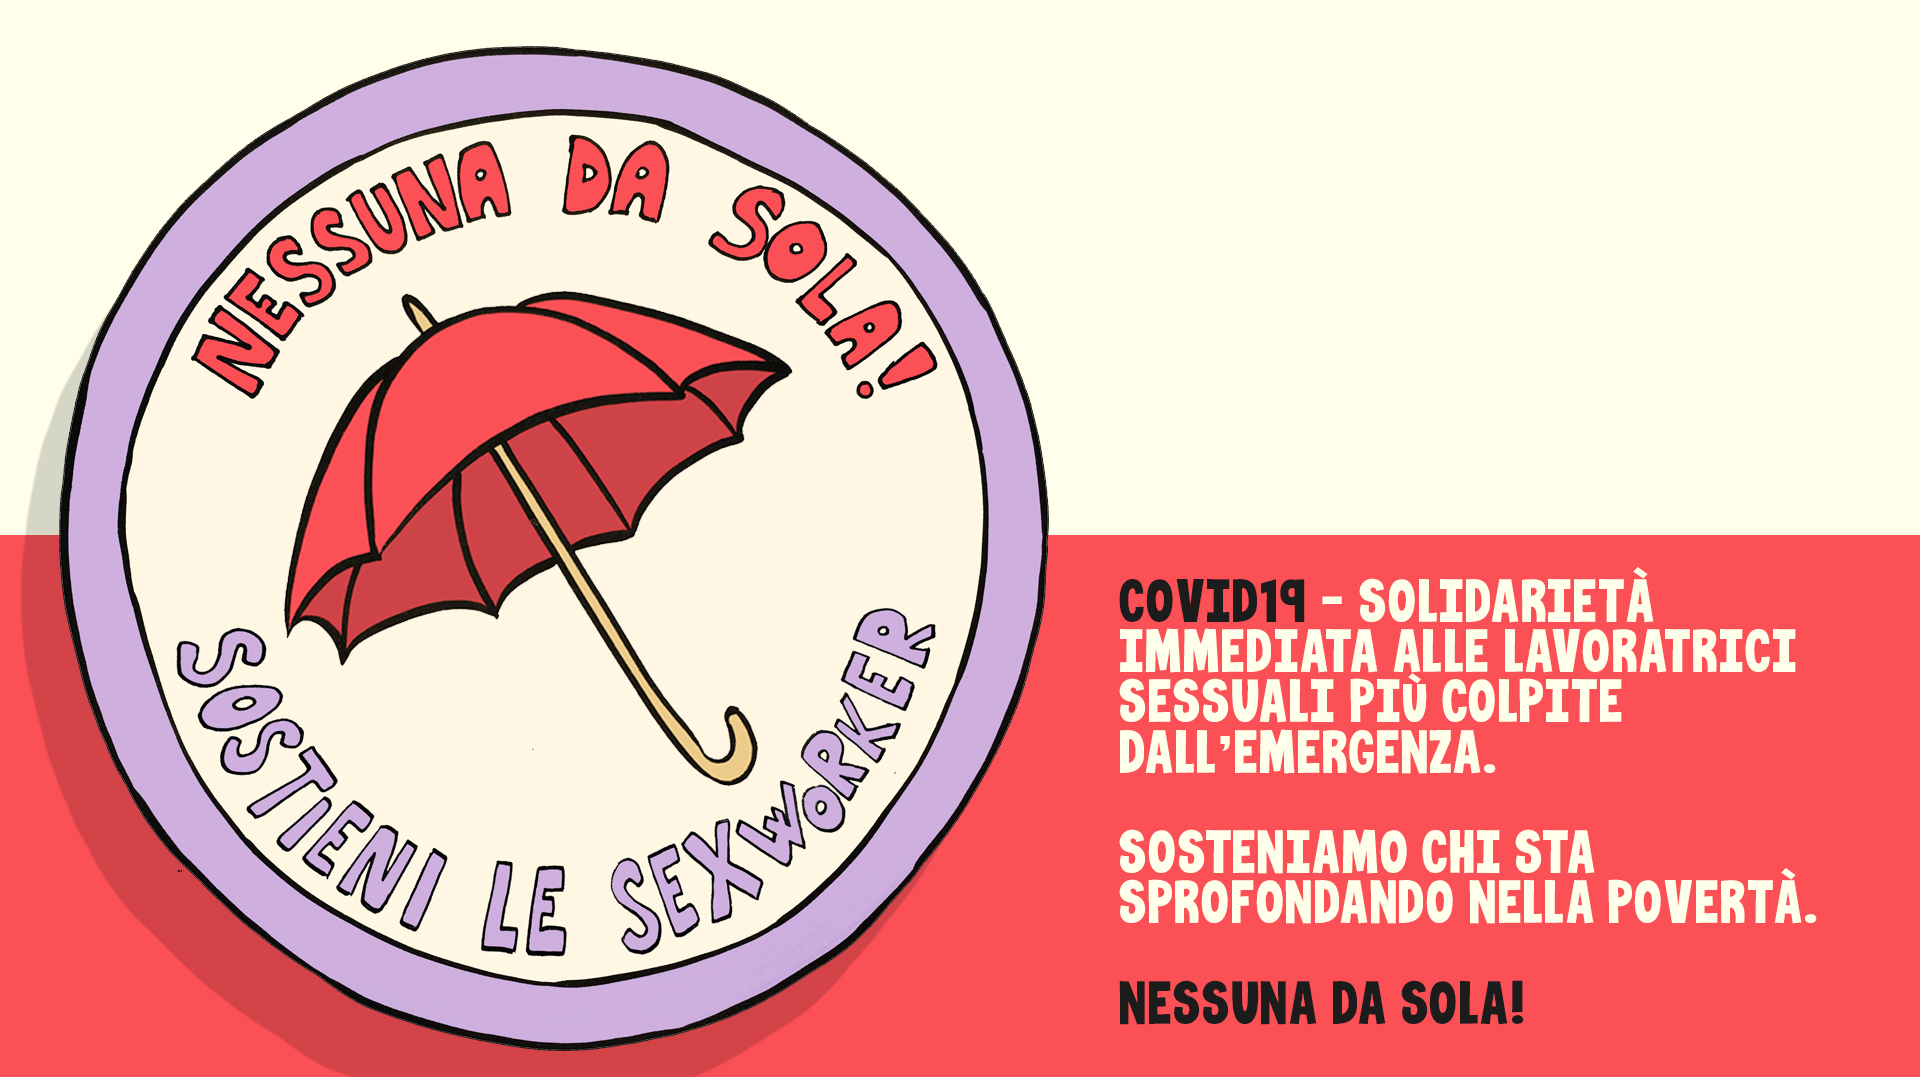 Covid19 - Nessuna da sola! Solidarietà immediata alle lavoratrici sessuali più colpite dall'emergenza